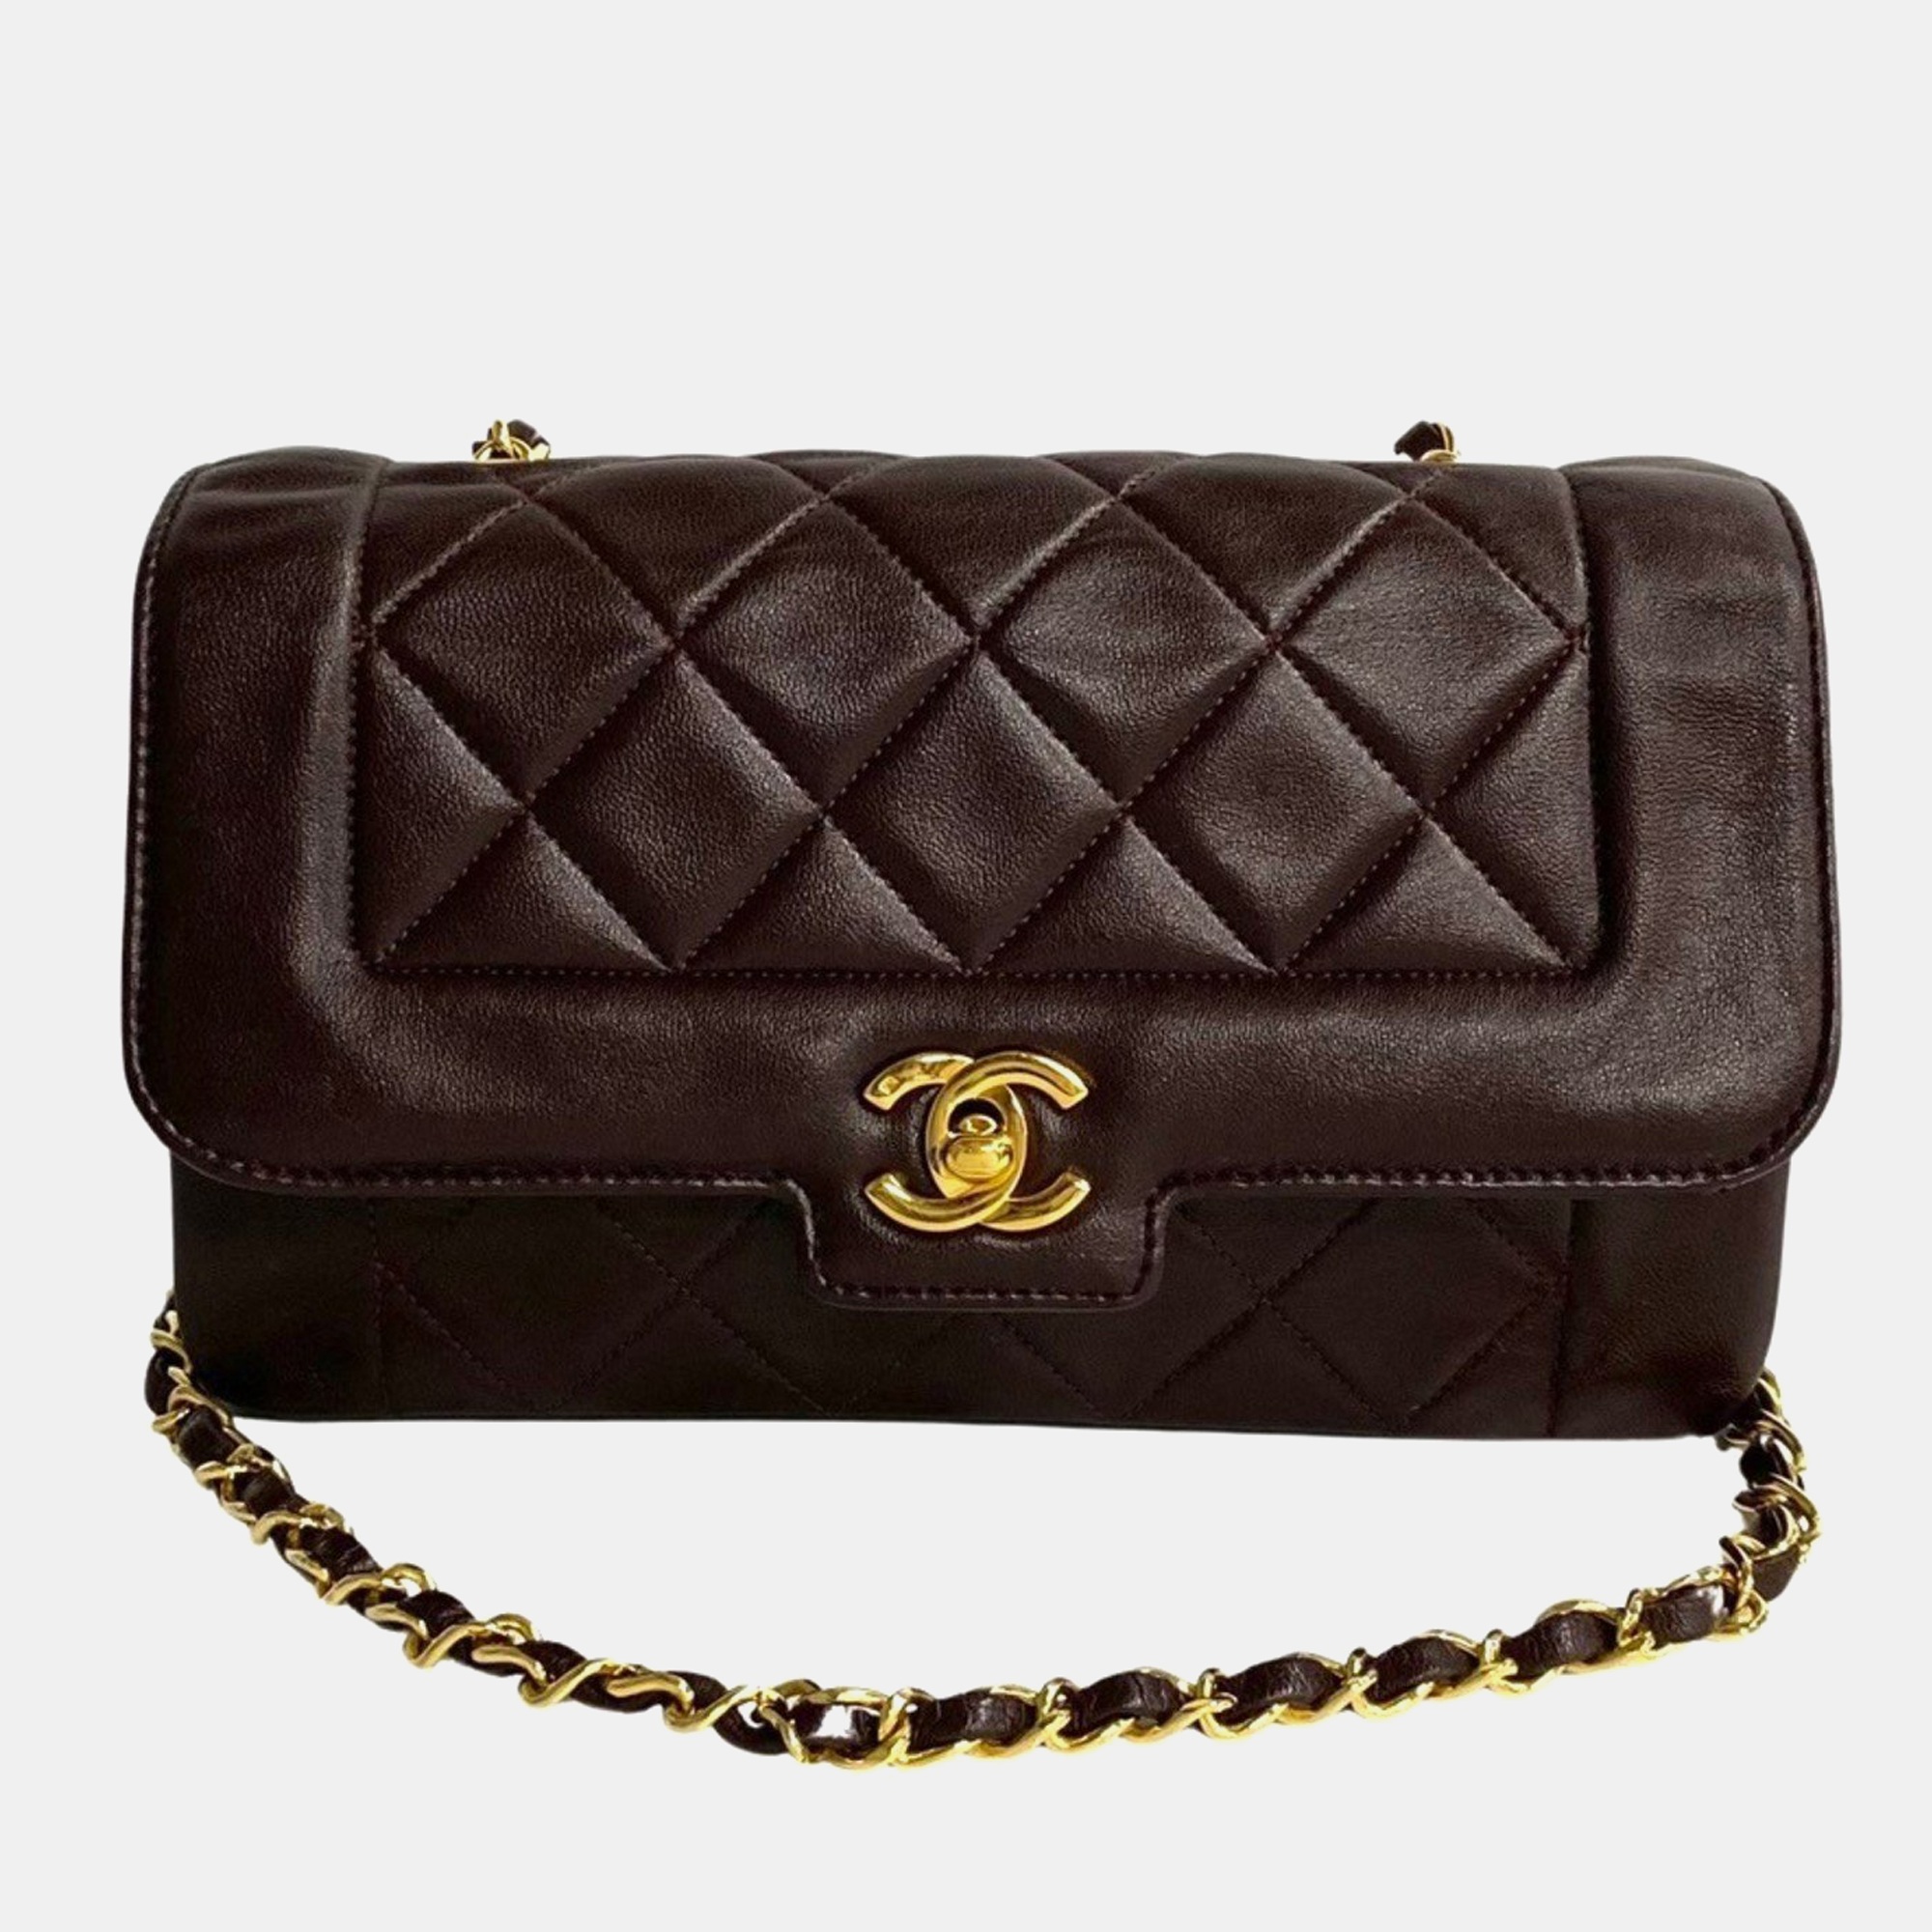 Chanel brown leather vintage diana shoulder bag